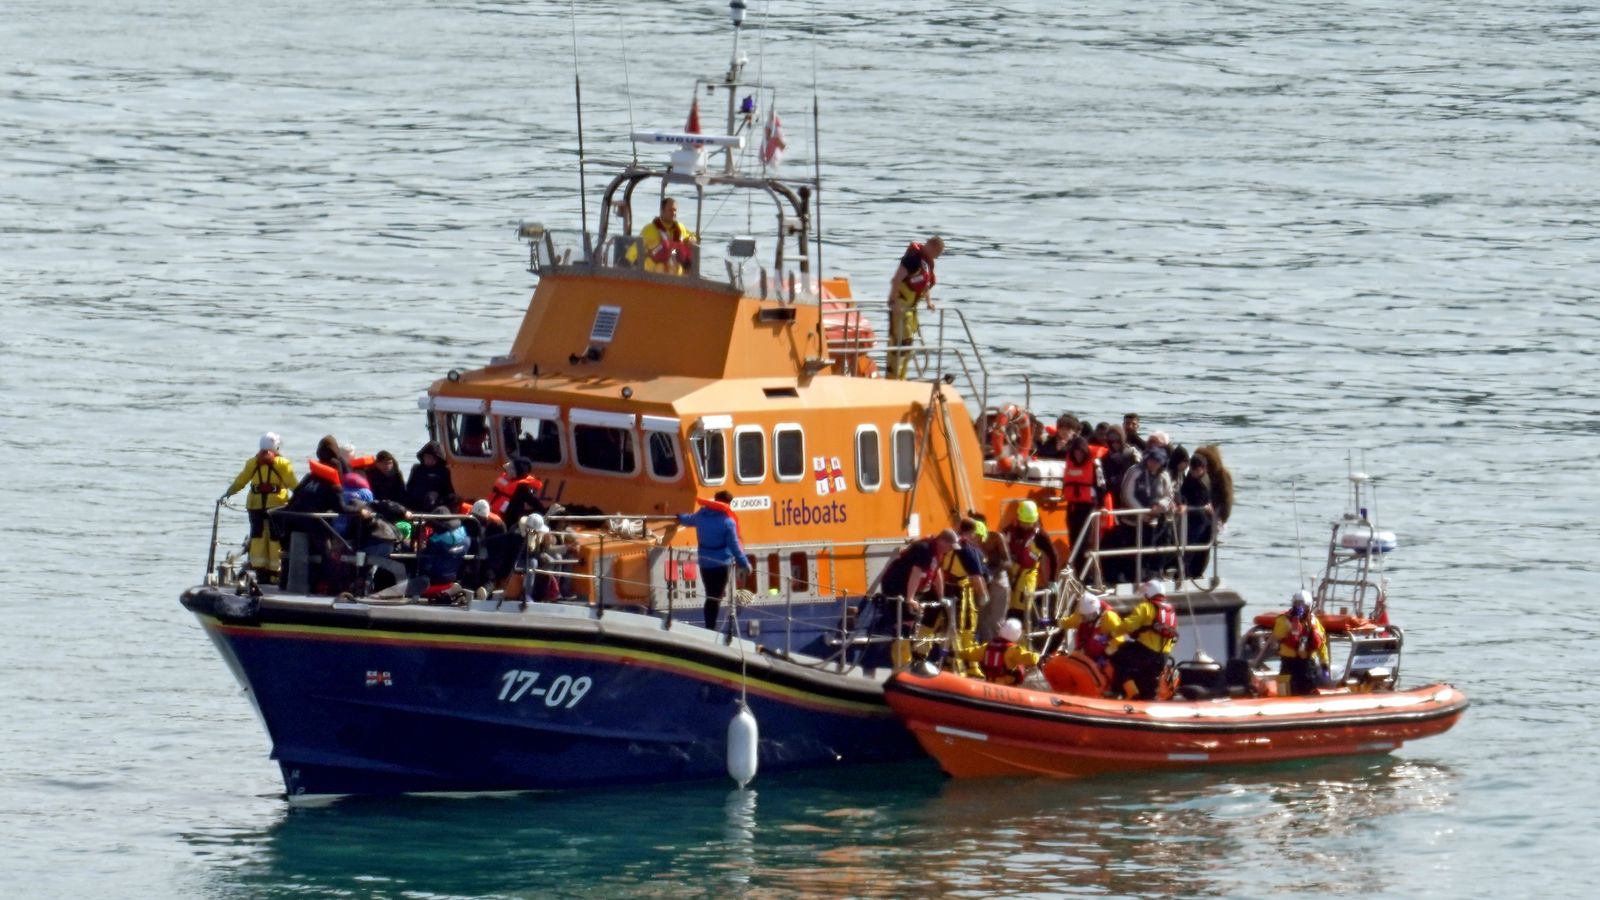 خفر السواحل البريطاني يرافق مجموعة من اللاجئين لدى وصلهم الى دوفر بمقاطعة كينت